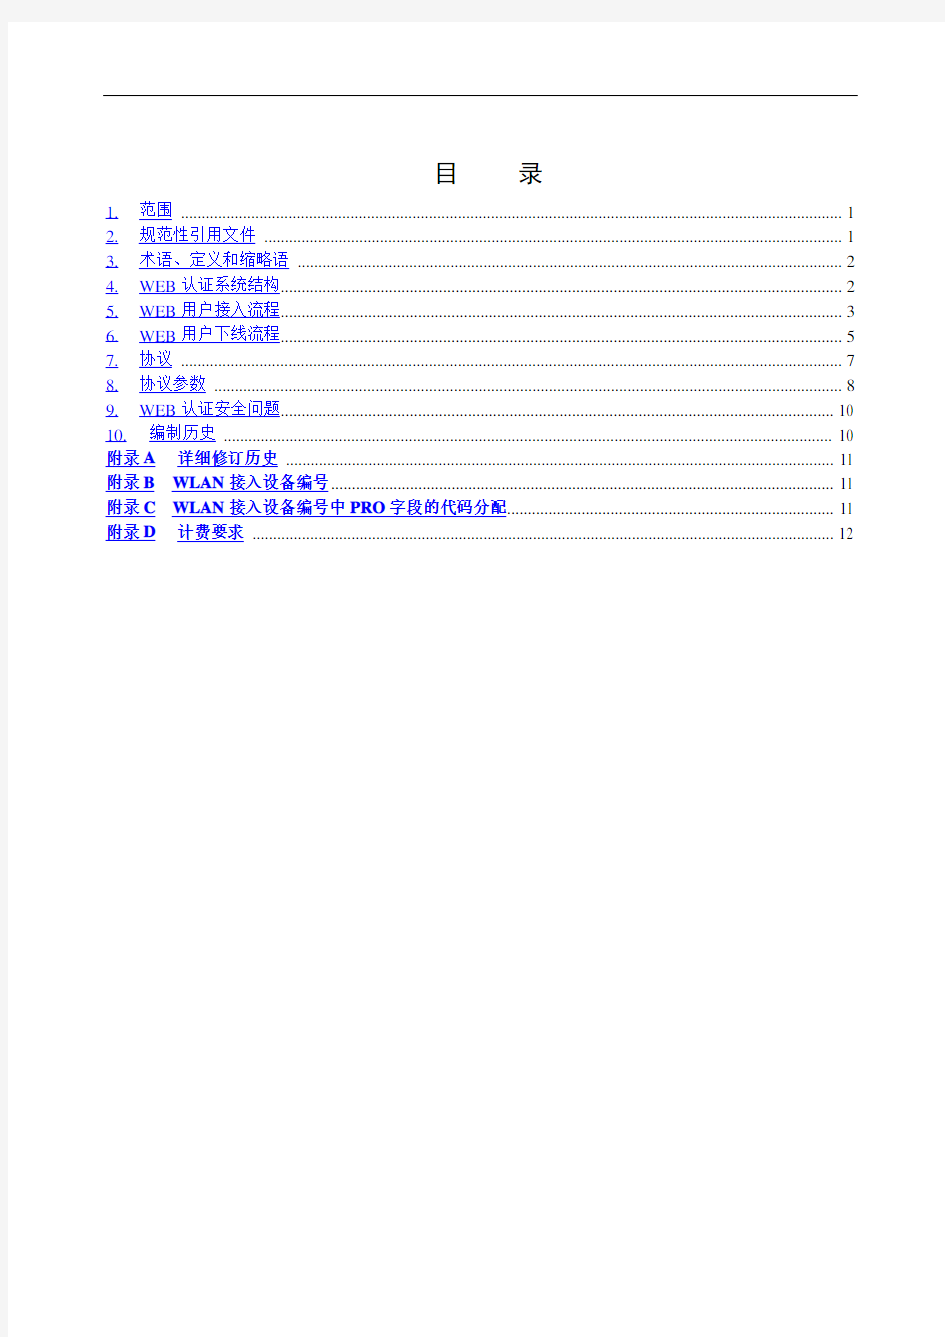 中国移动WLAN用户接入流程技术规范(WEB)V2.0.6全解